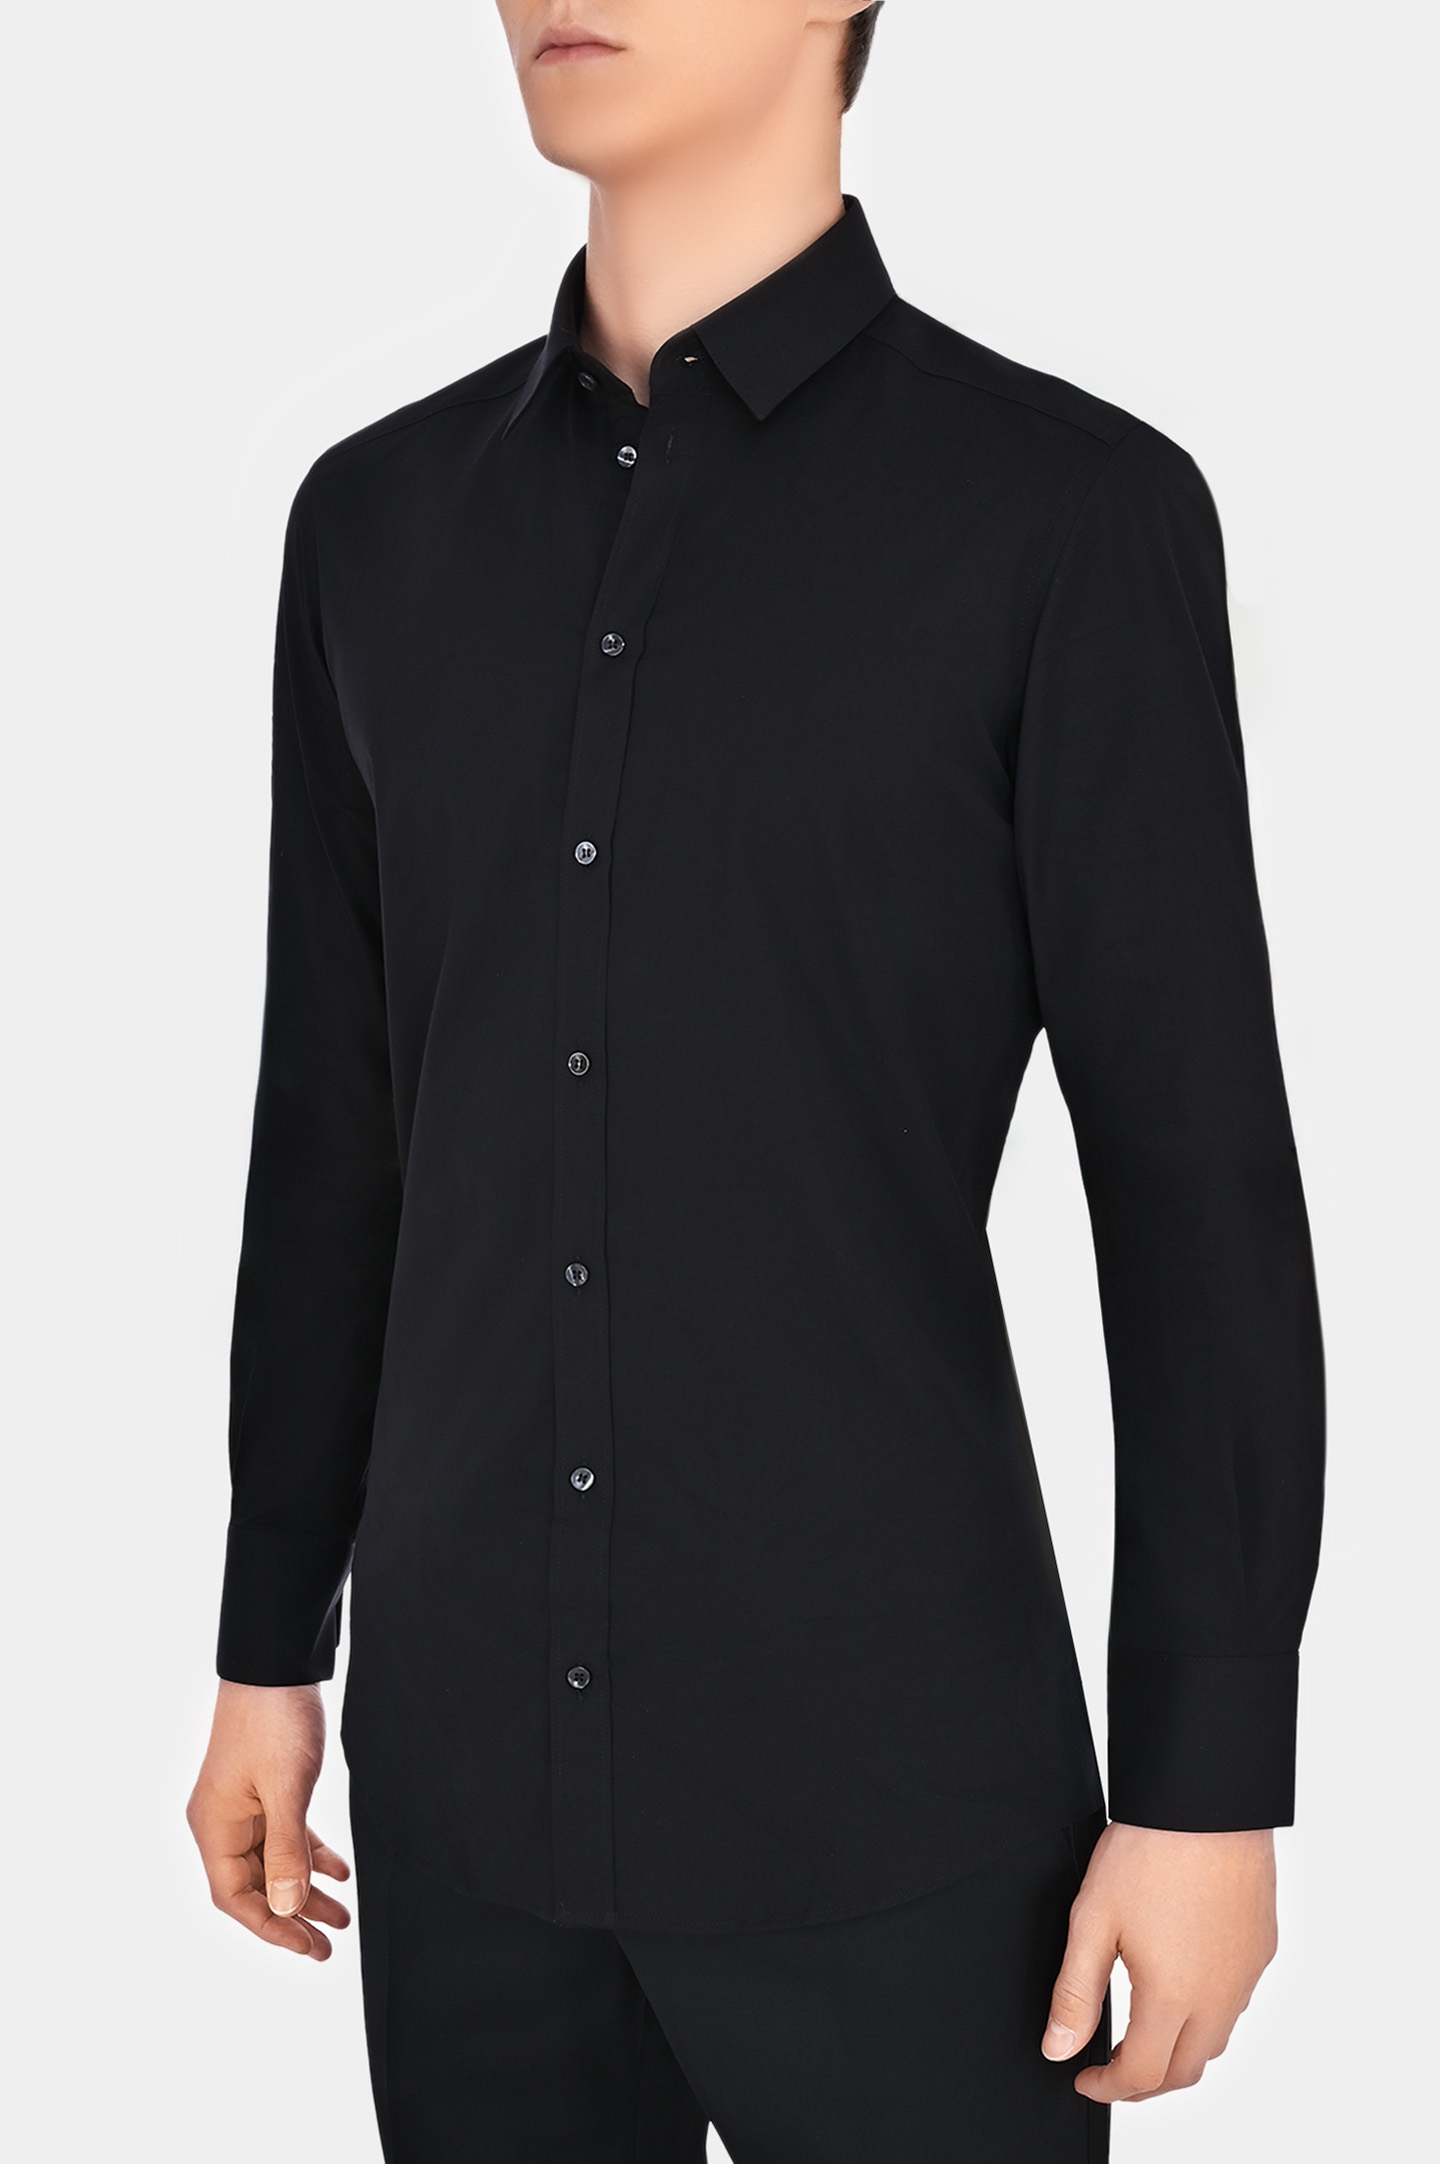 Рубашка DOLCE & GABBANA G5EJ0T GG826, цвет: Черный, Мужской